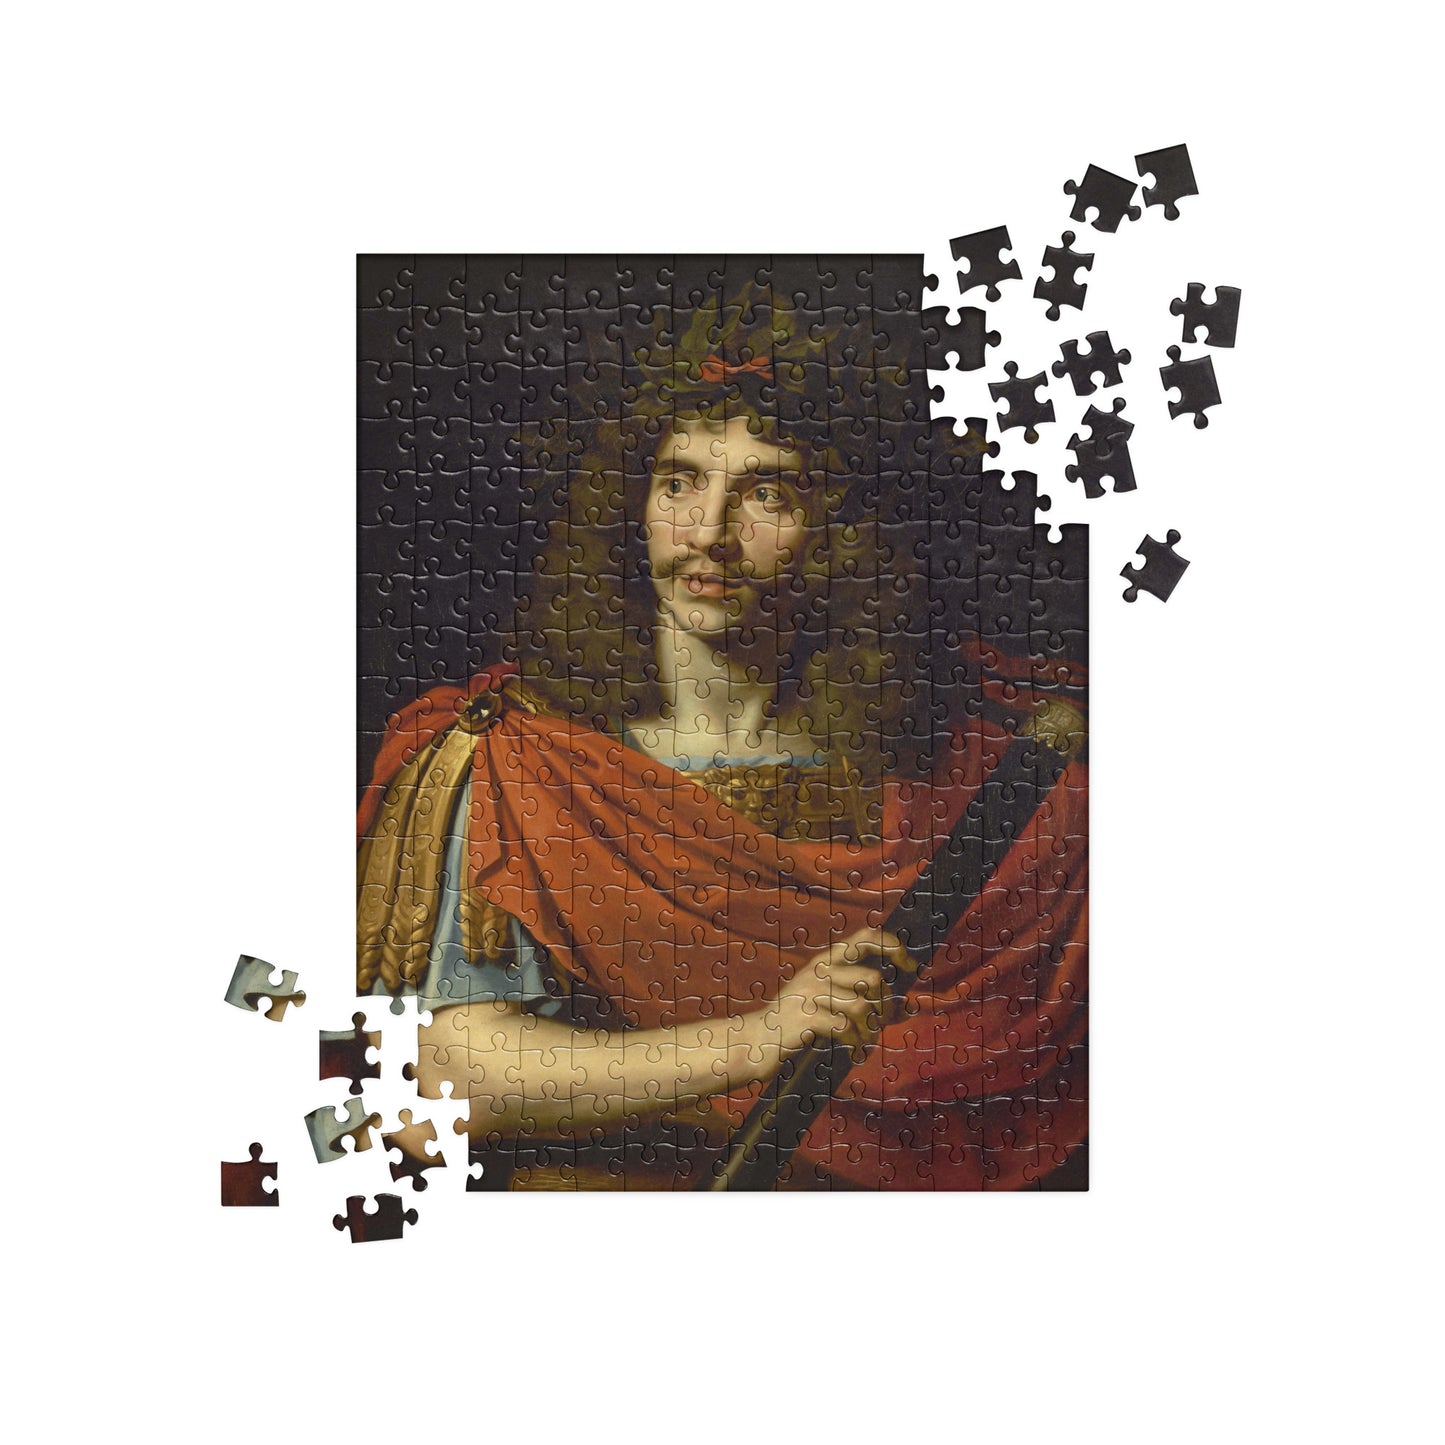 Molière jigsaw puzzle